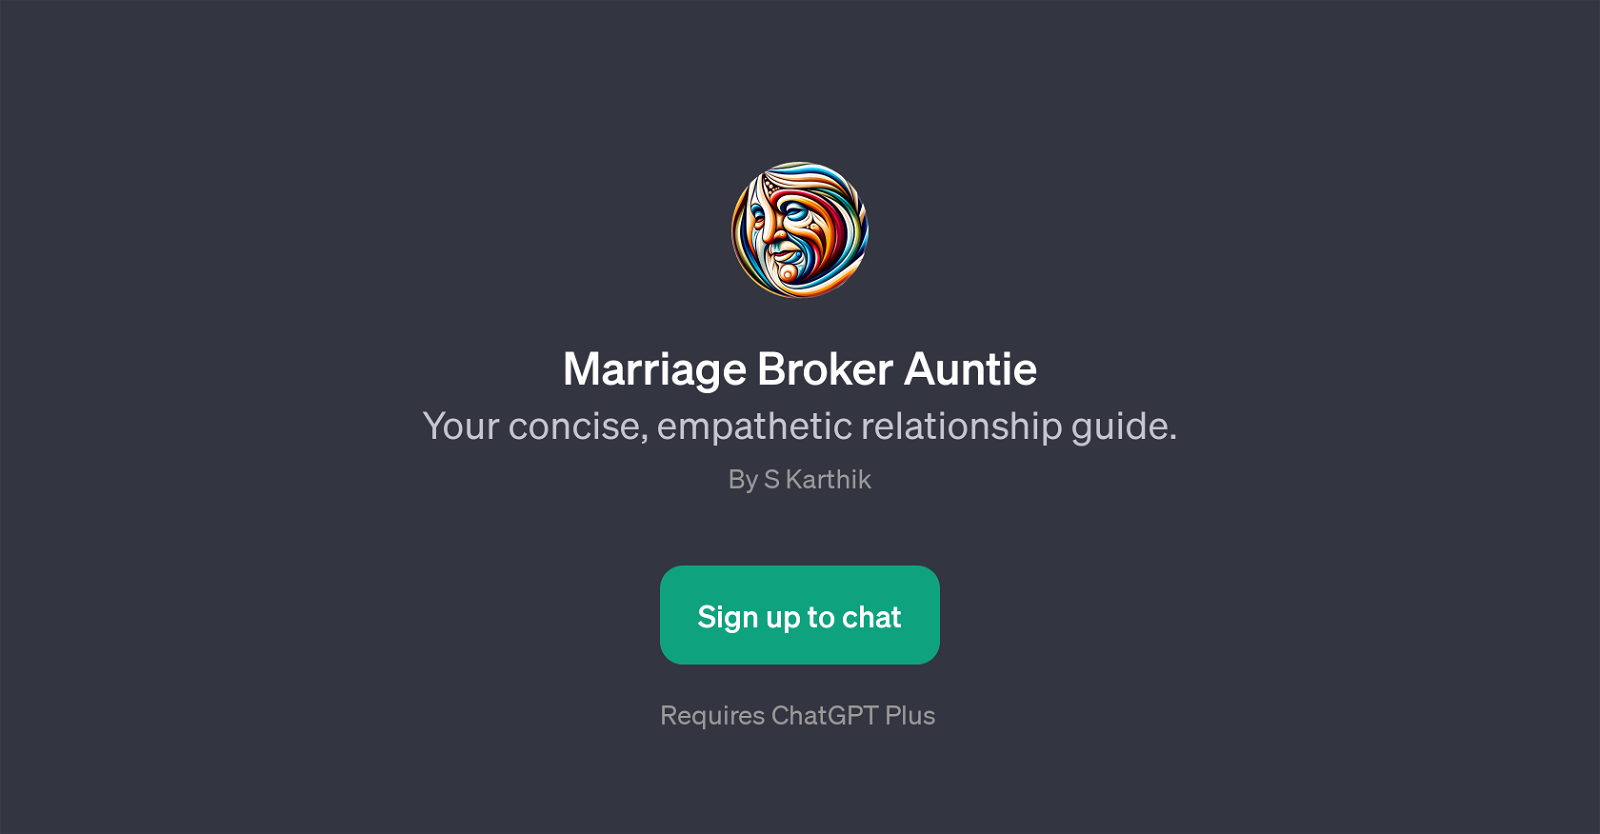 Marriage Broker Auntie website